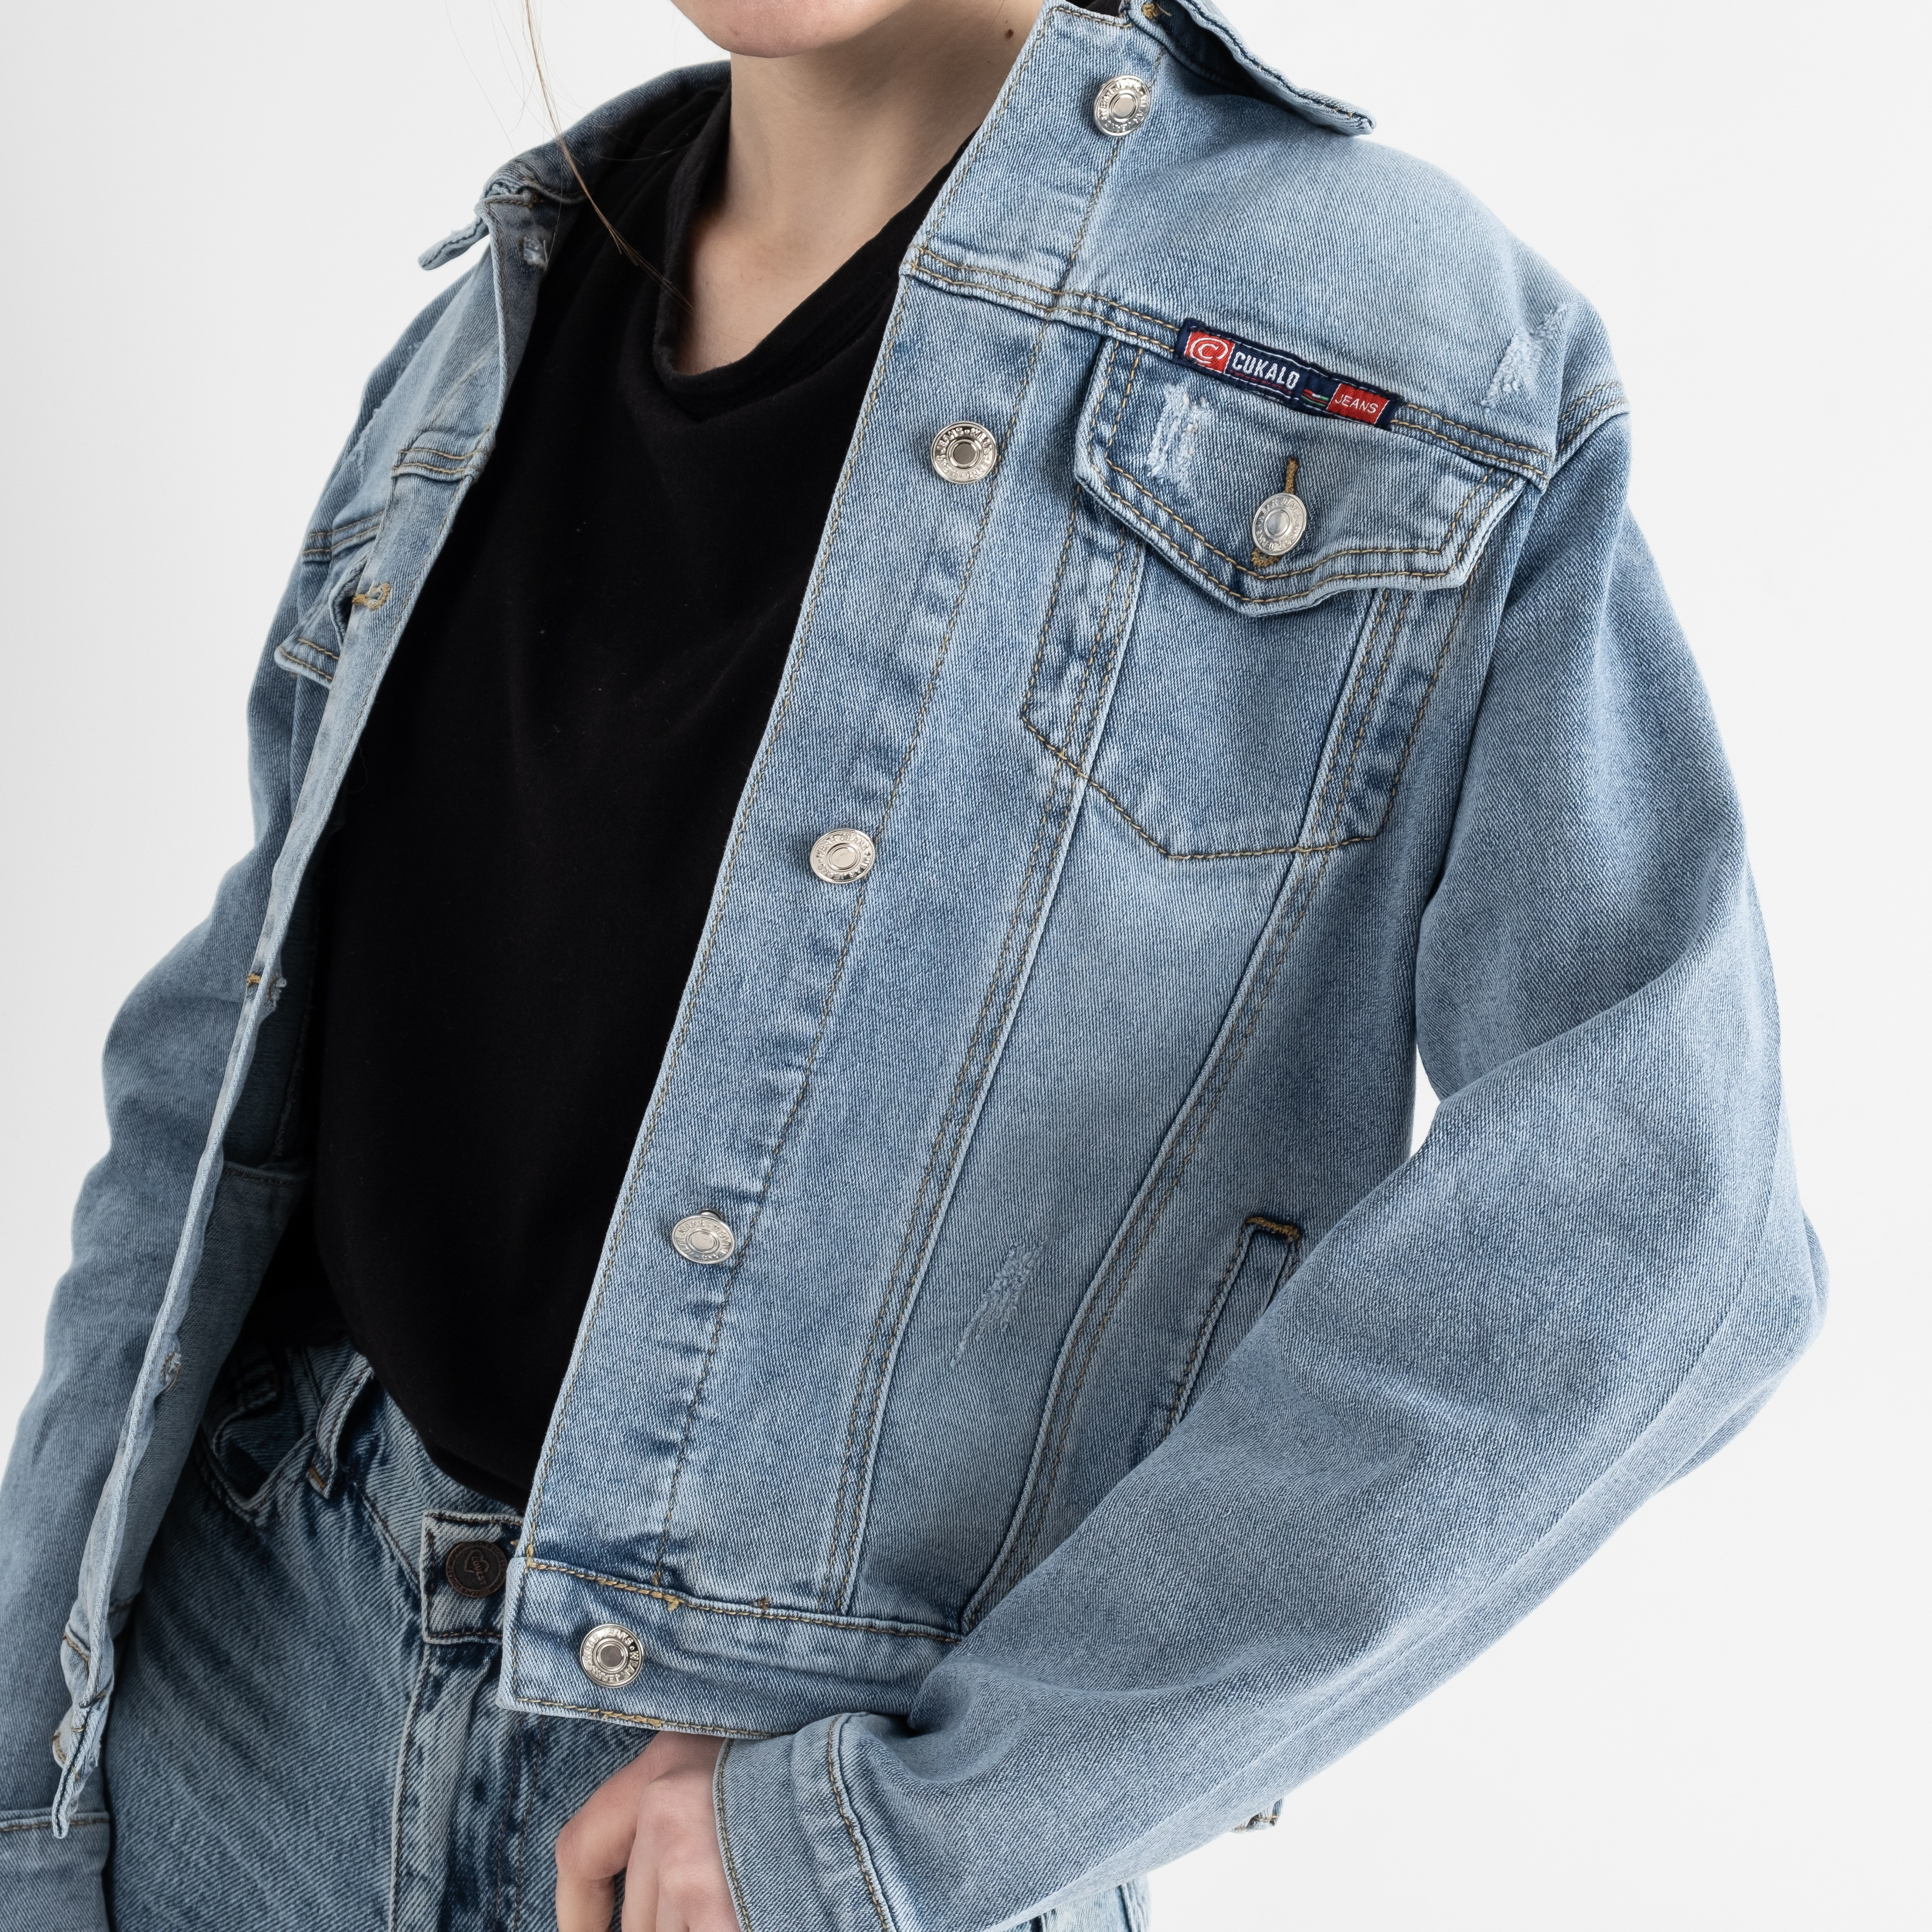 0901-1 New Jeans джинсовая куртка женская голубая стрейчевая ( 6 ед.размеры: XS.S.M.L.XL.2XL)